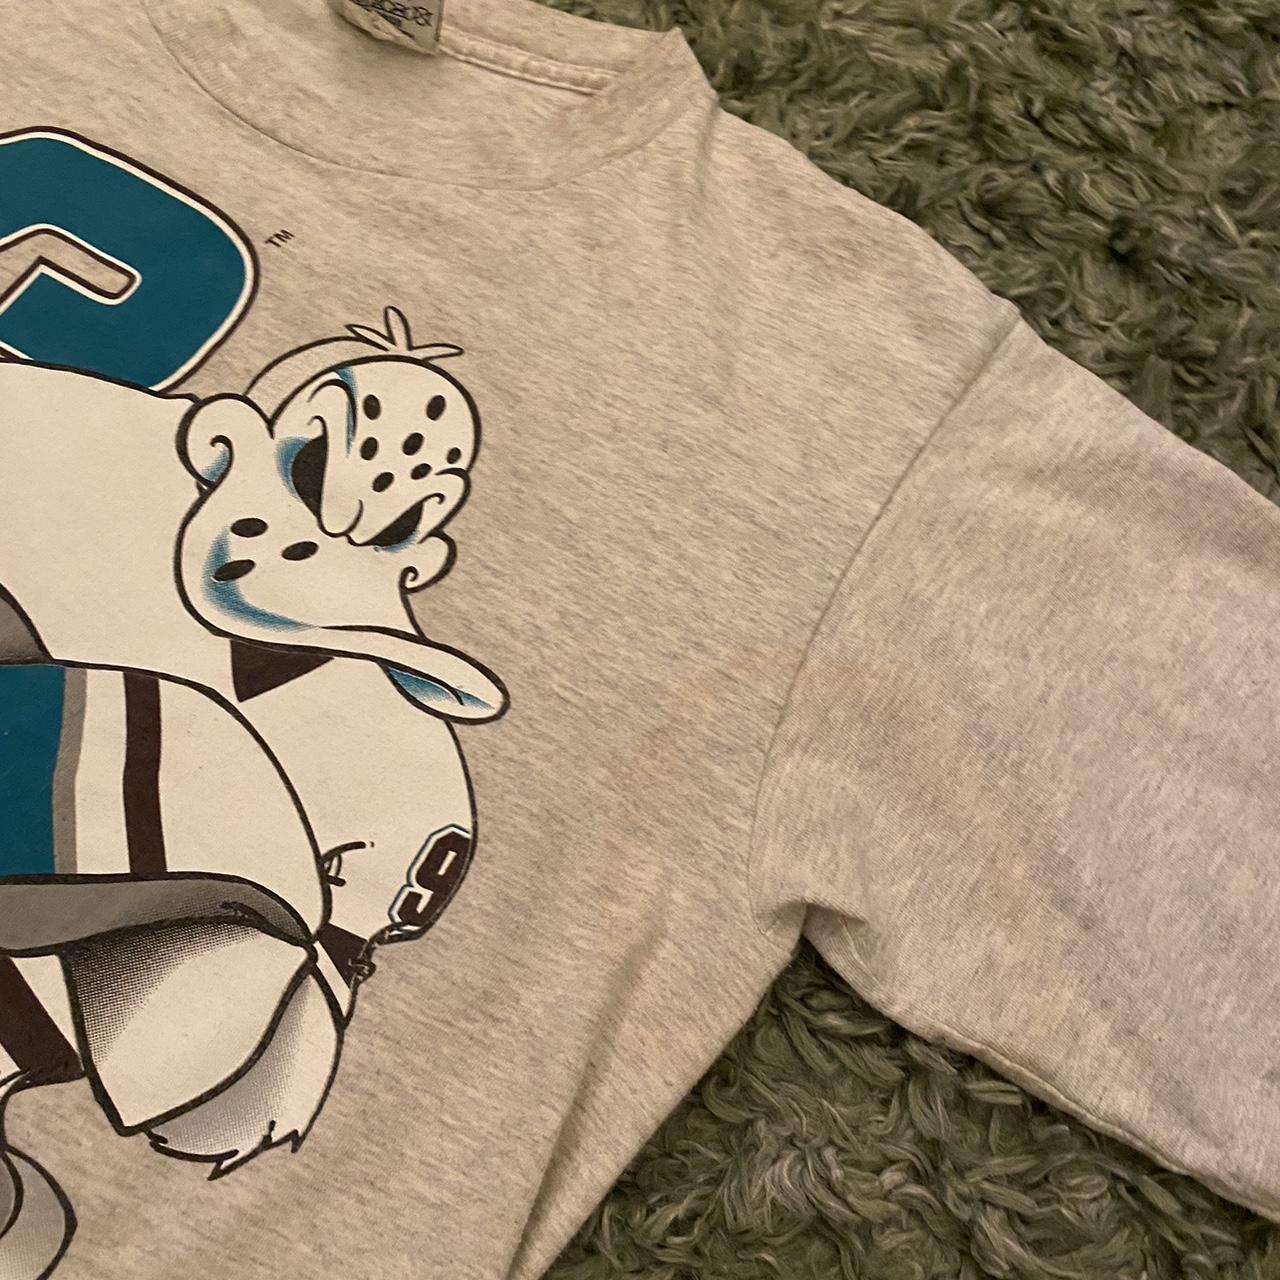 Vintage NHL Mighty Ducks Shirt, Anaheim Ducks Unisex - Depop